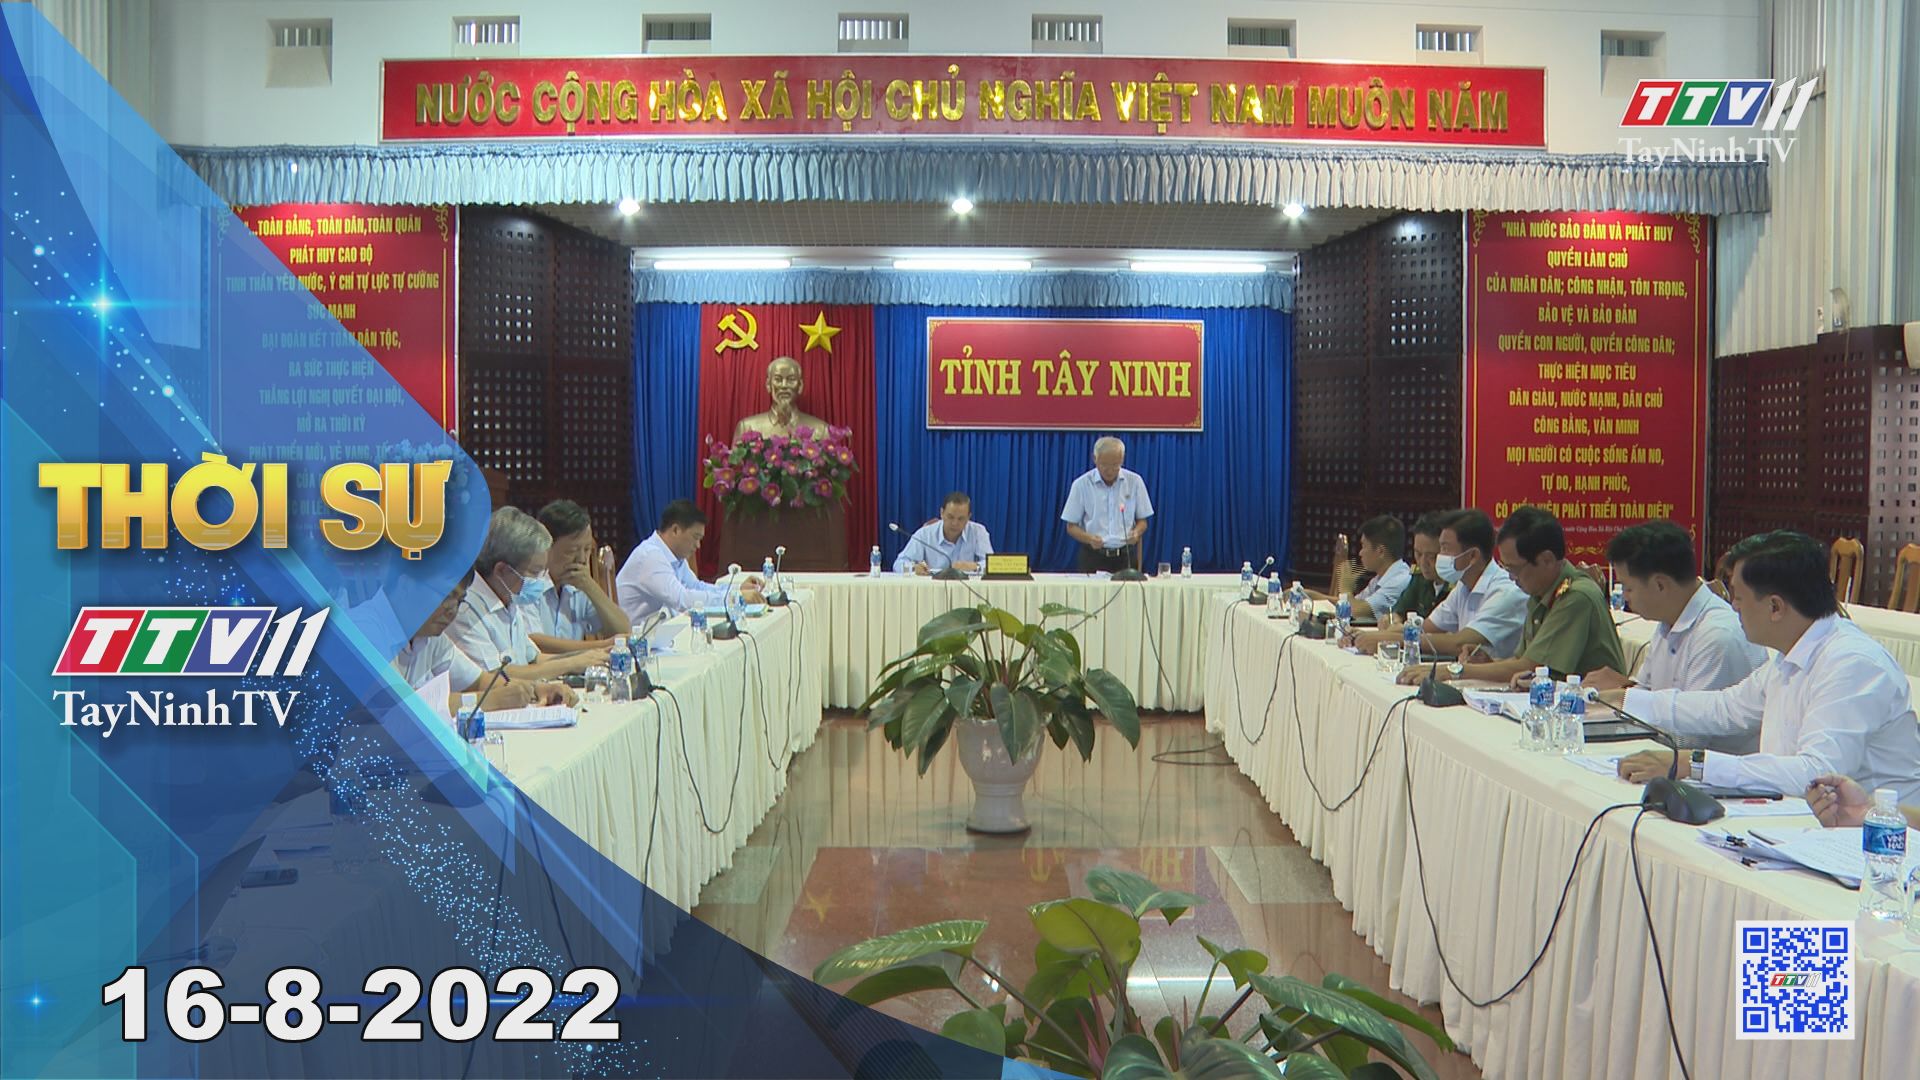 Thời sự Tây Ninh 16-8-2022 | Tin tức hôm nay | TayNinhTV